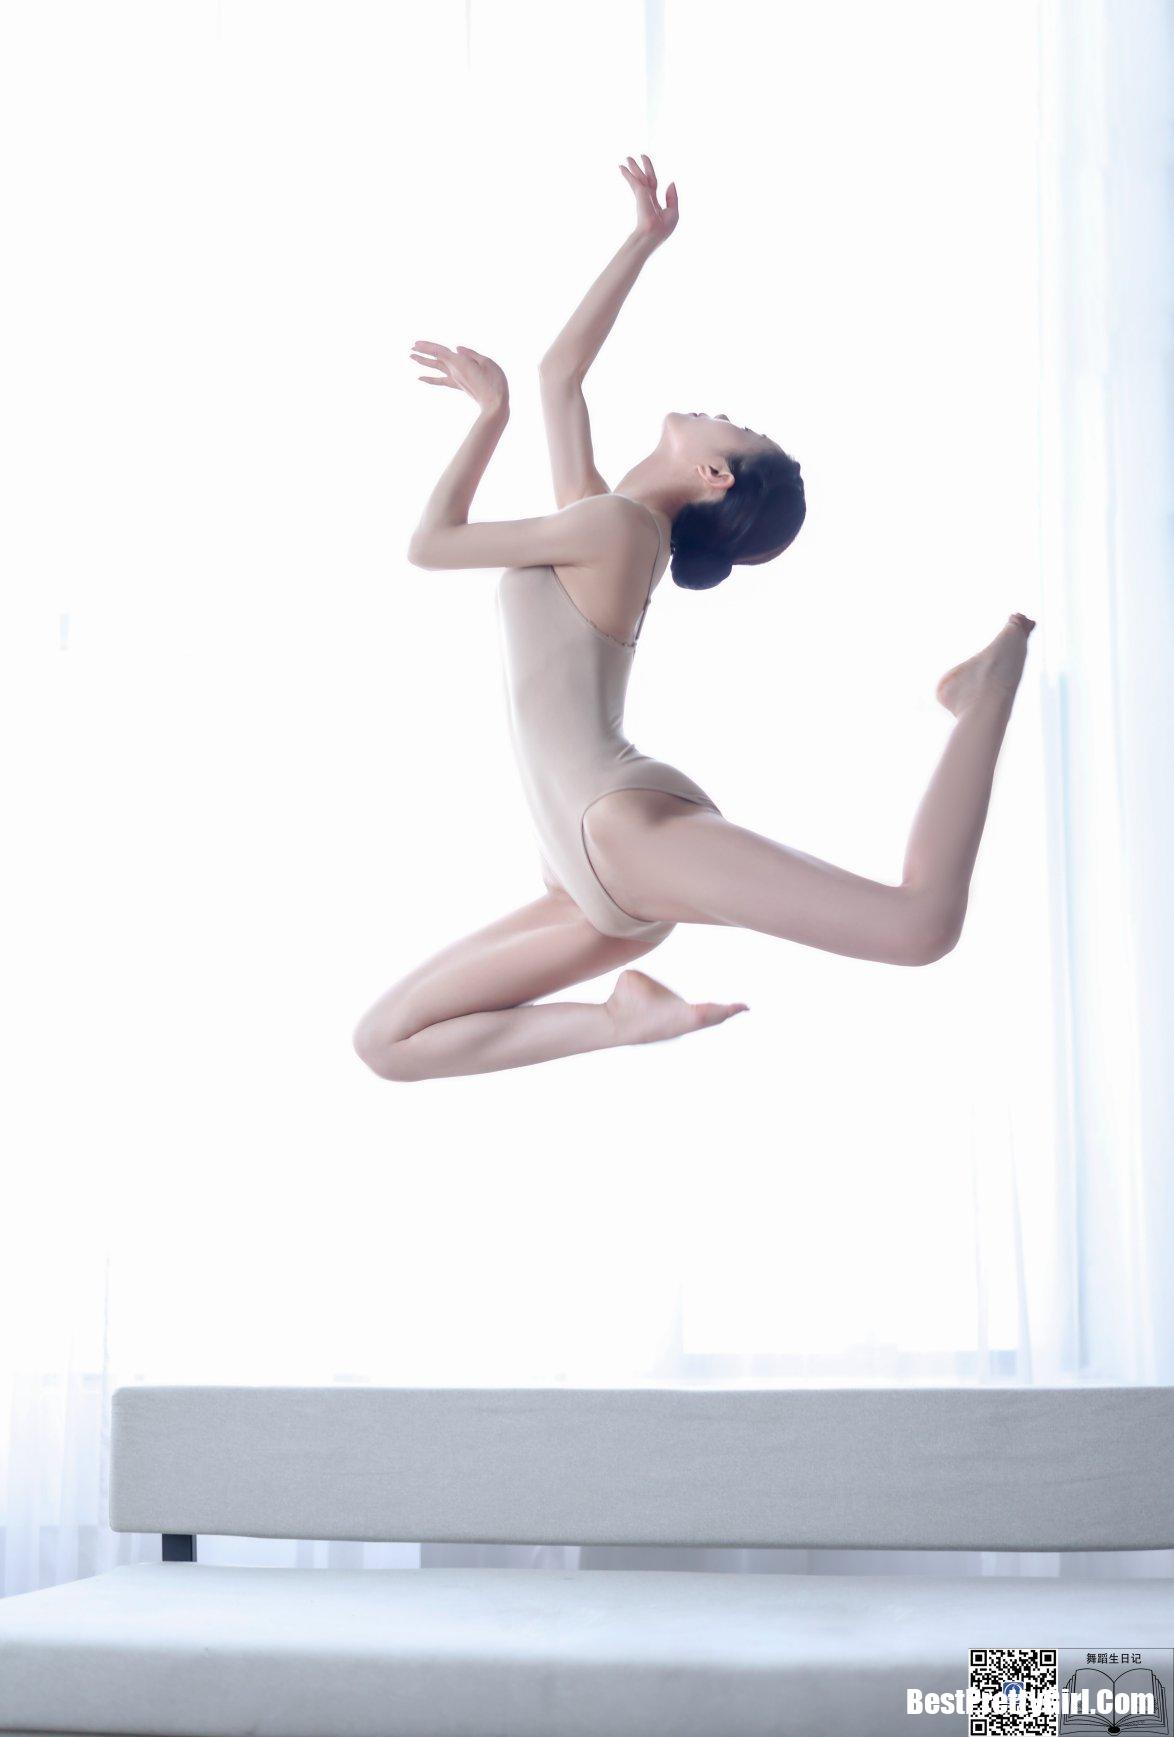 DanceDiary舞蹈生日记 2020.01.02 Qian Qian 1